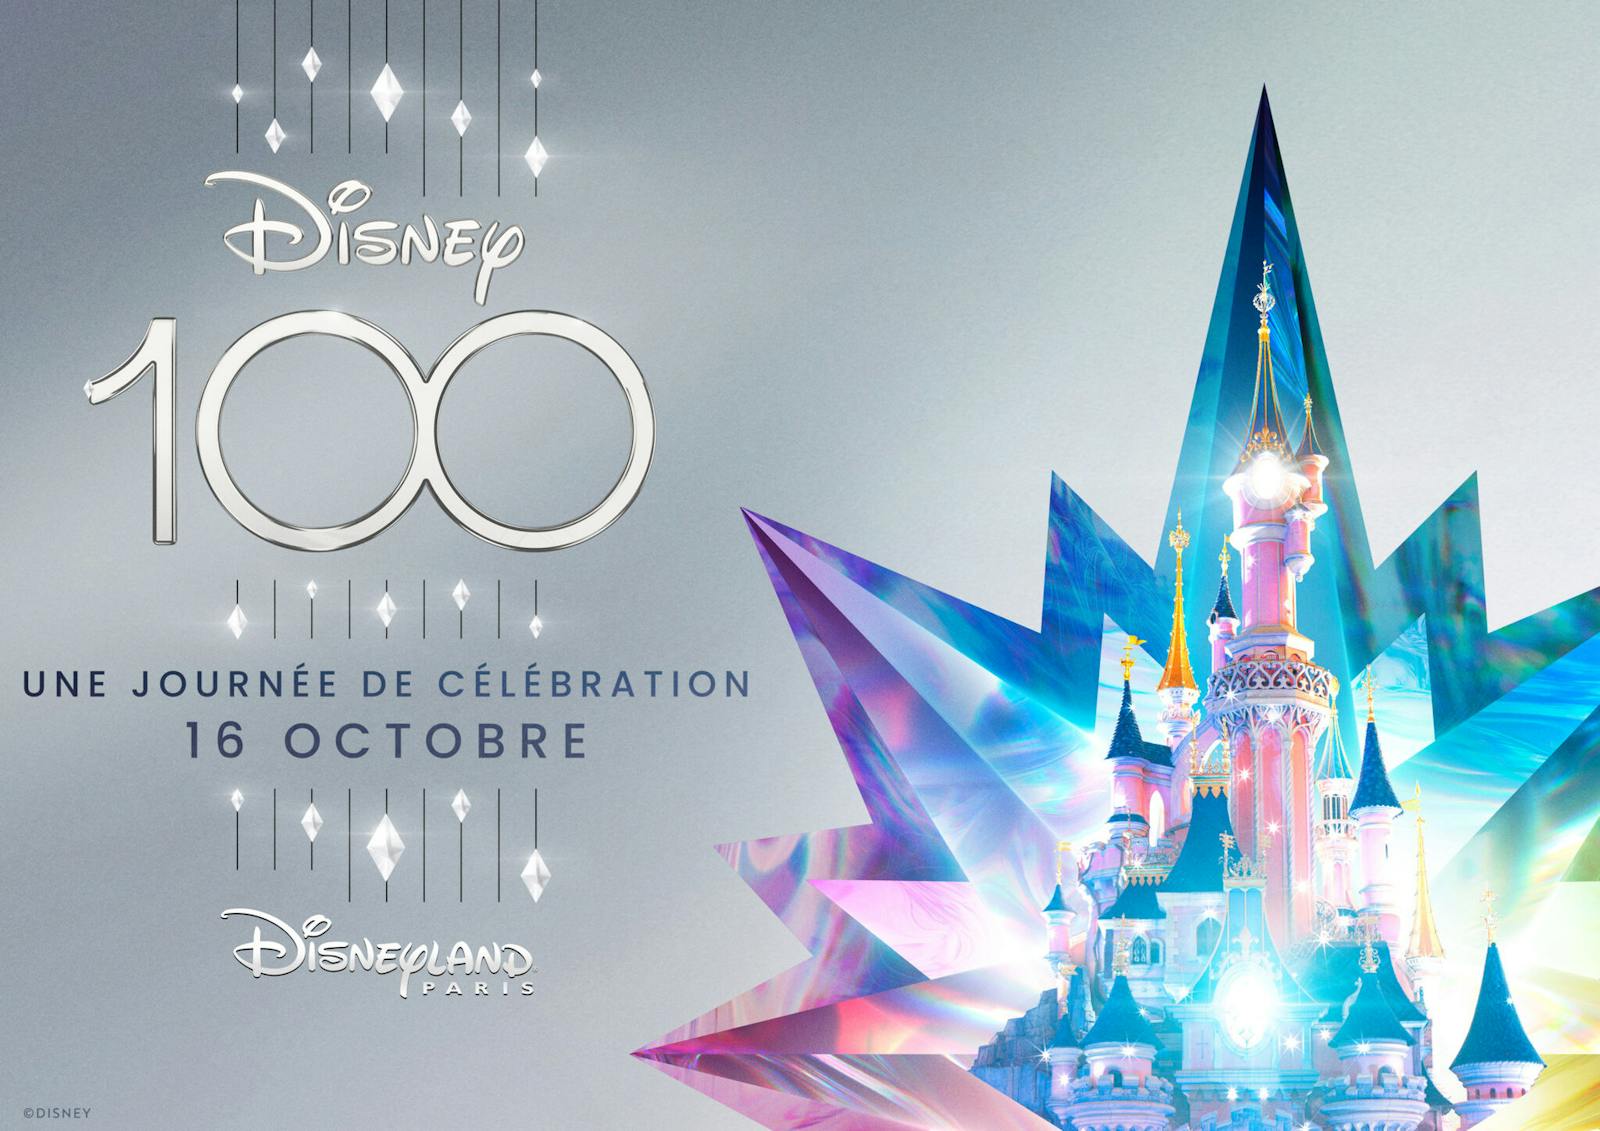 Disneyland Paris célèbre les 100 ans de la Walt Disney Company